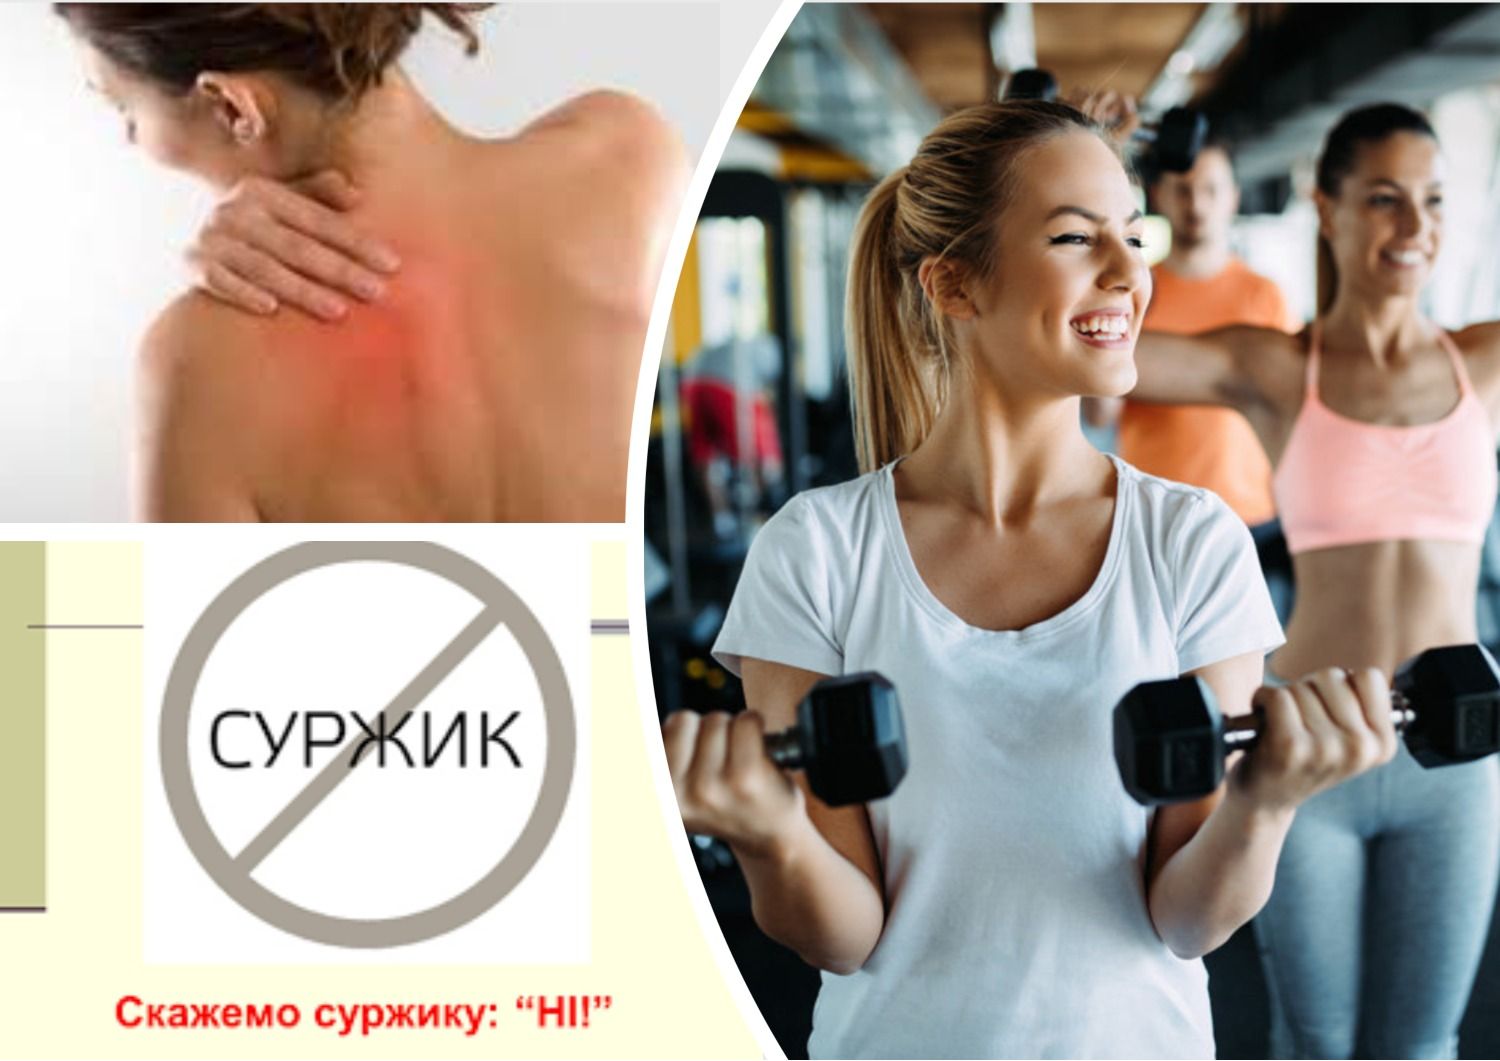 Антисуржик - як правильно говорити українською про м'язи і частини тіла - 24 Канал - Освіта